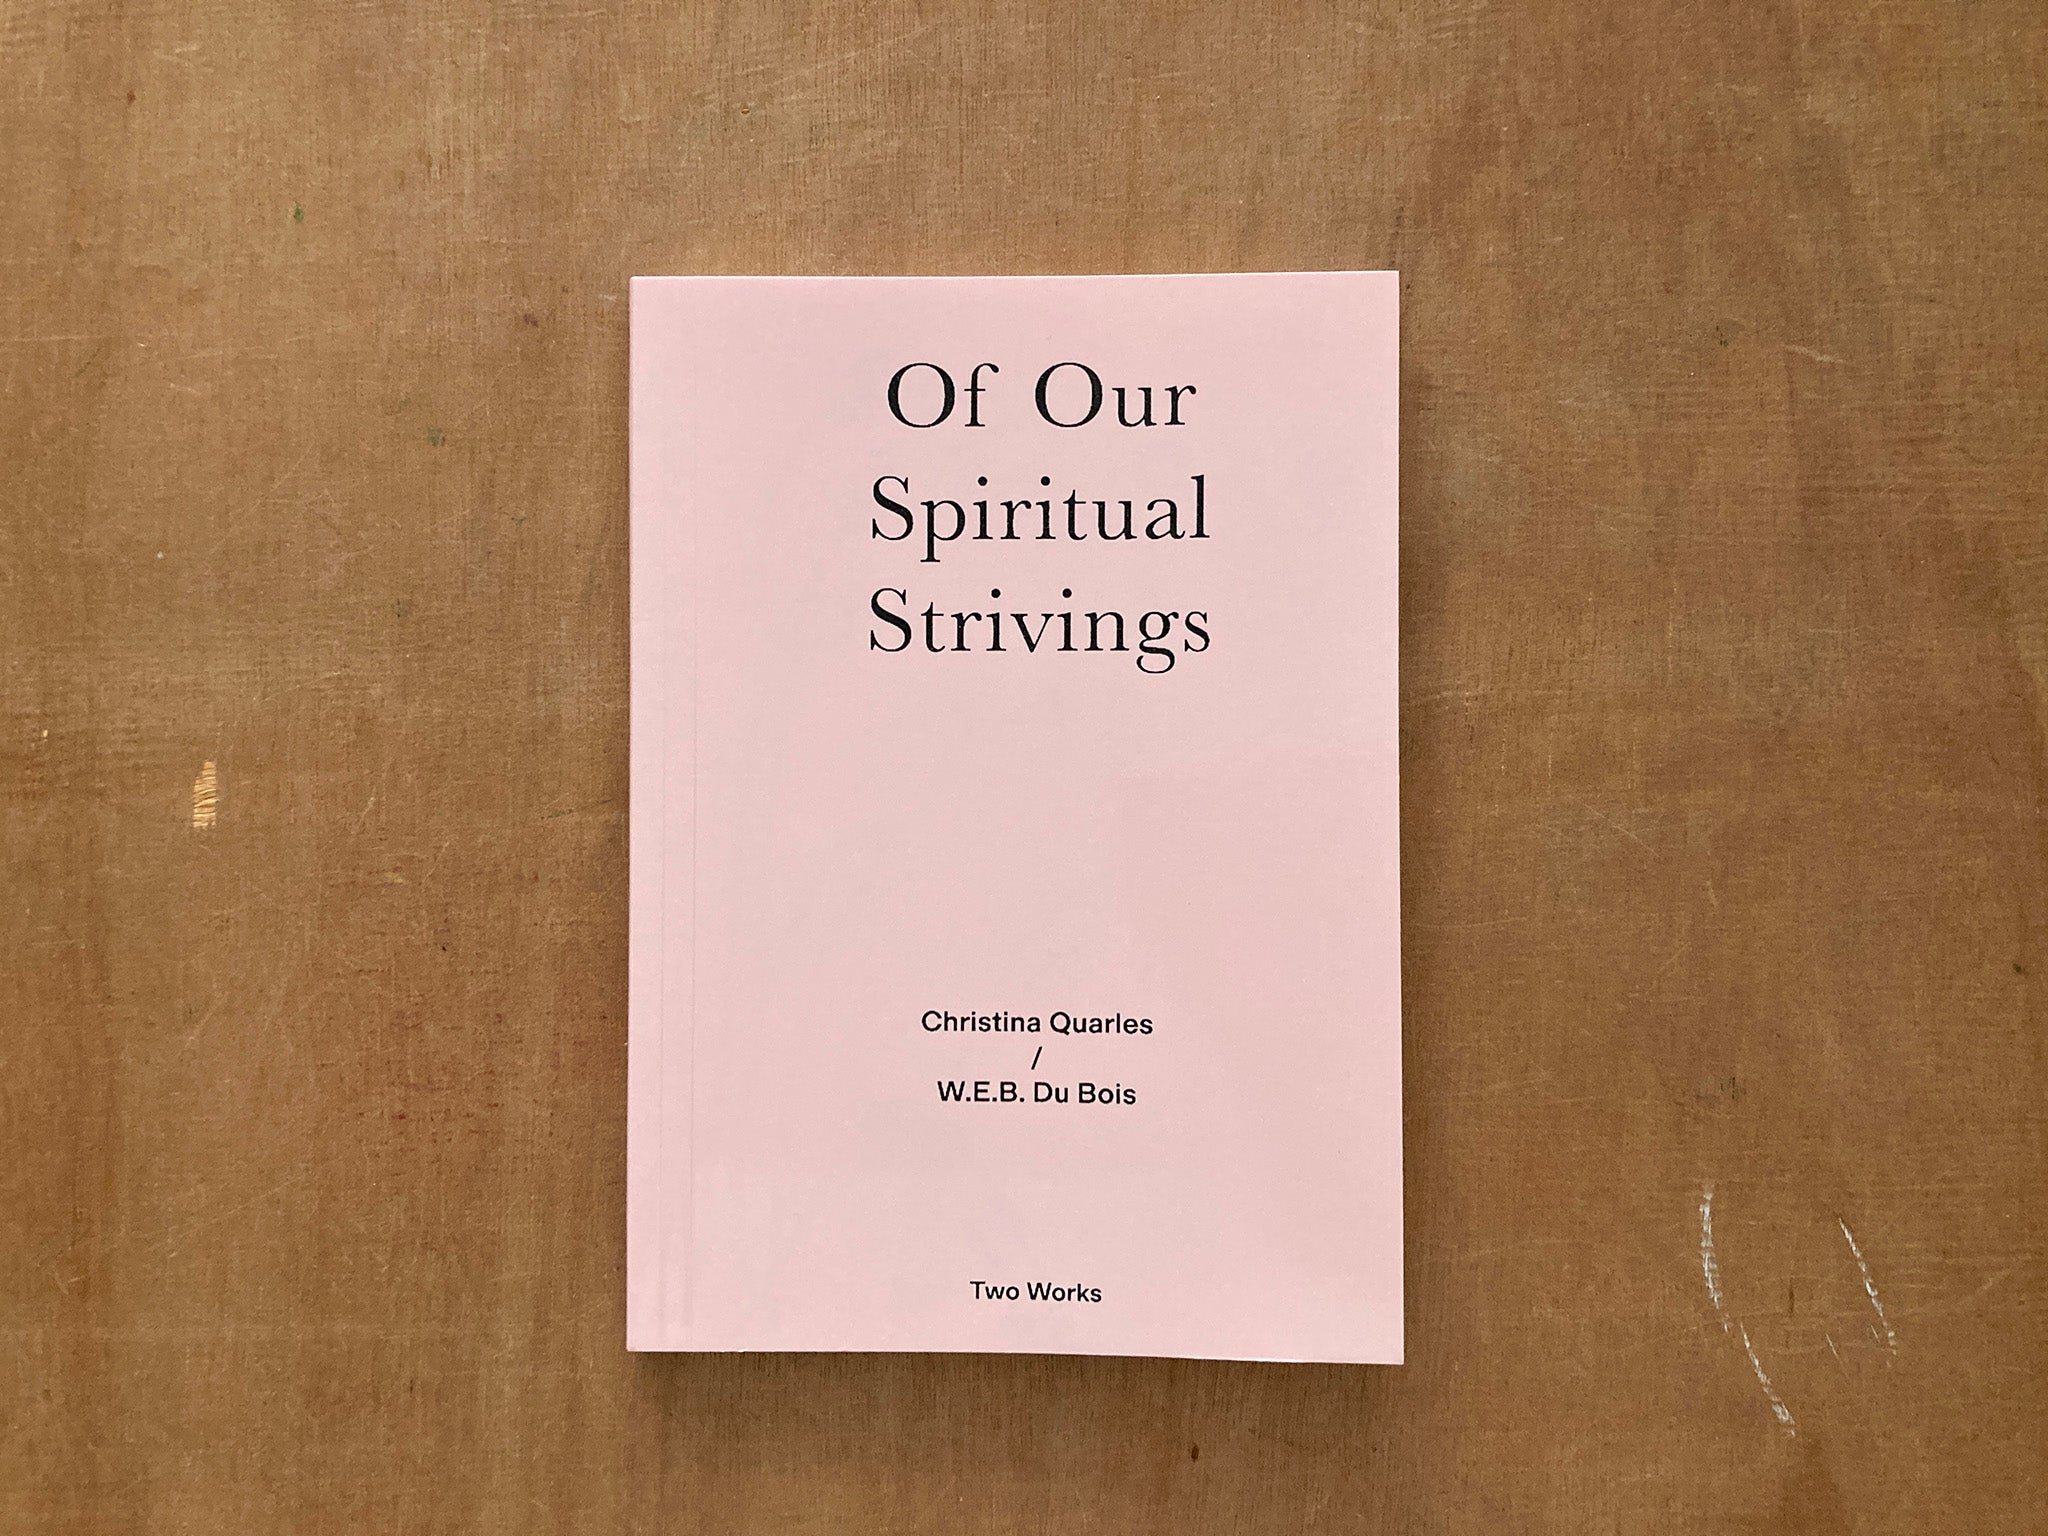 OF OUR SPIRITUAL STRIVINGS by W. E. B Du Bois / Christina Quarles